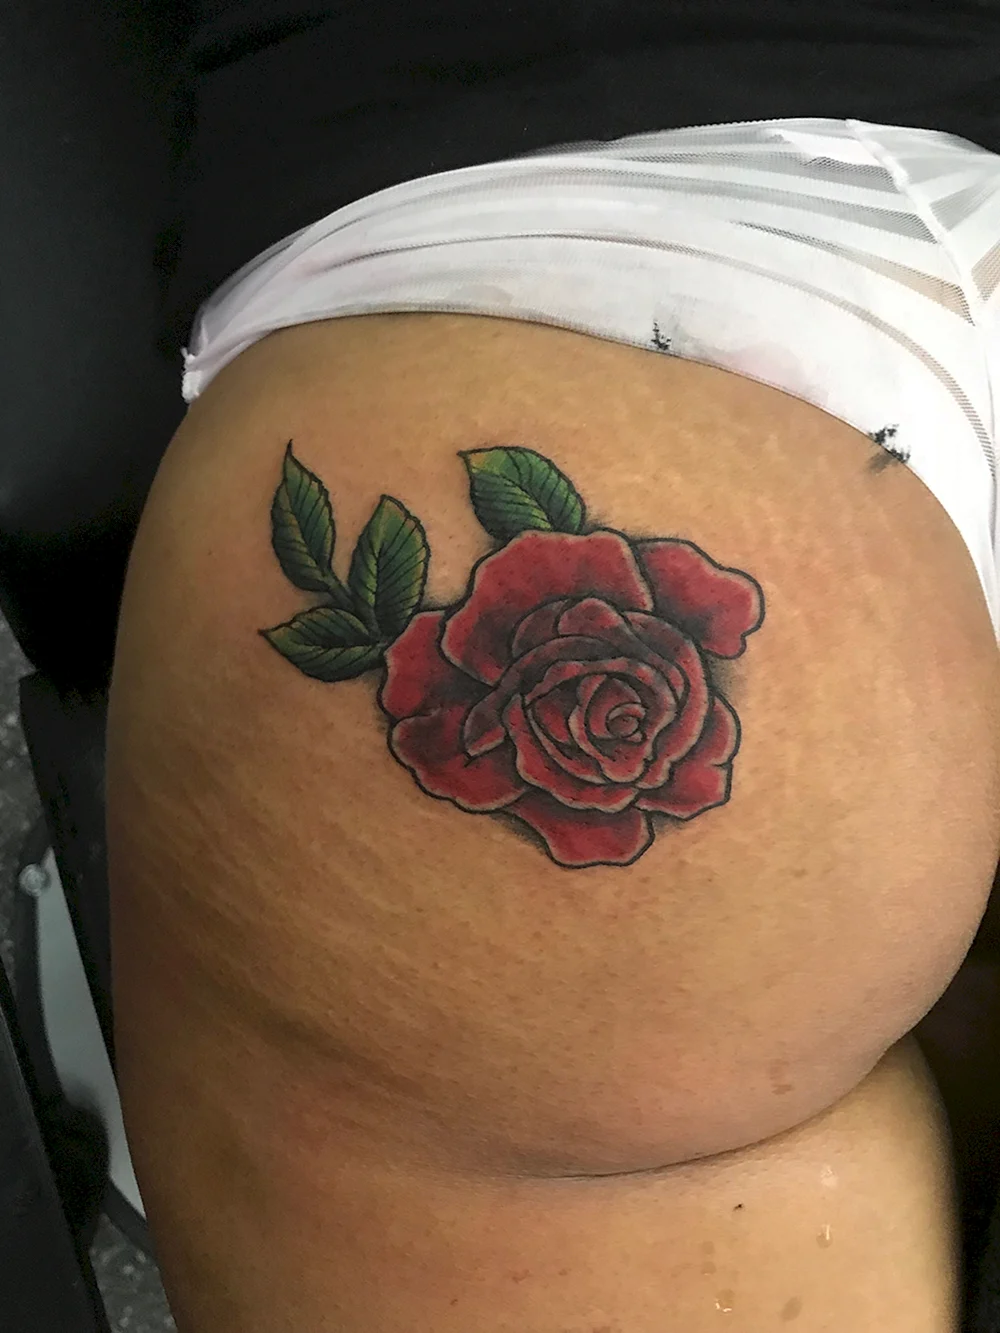 Tattoo on buttocks